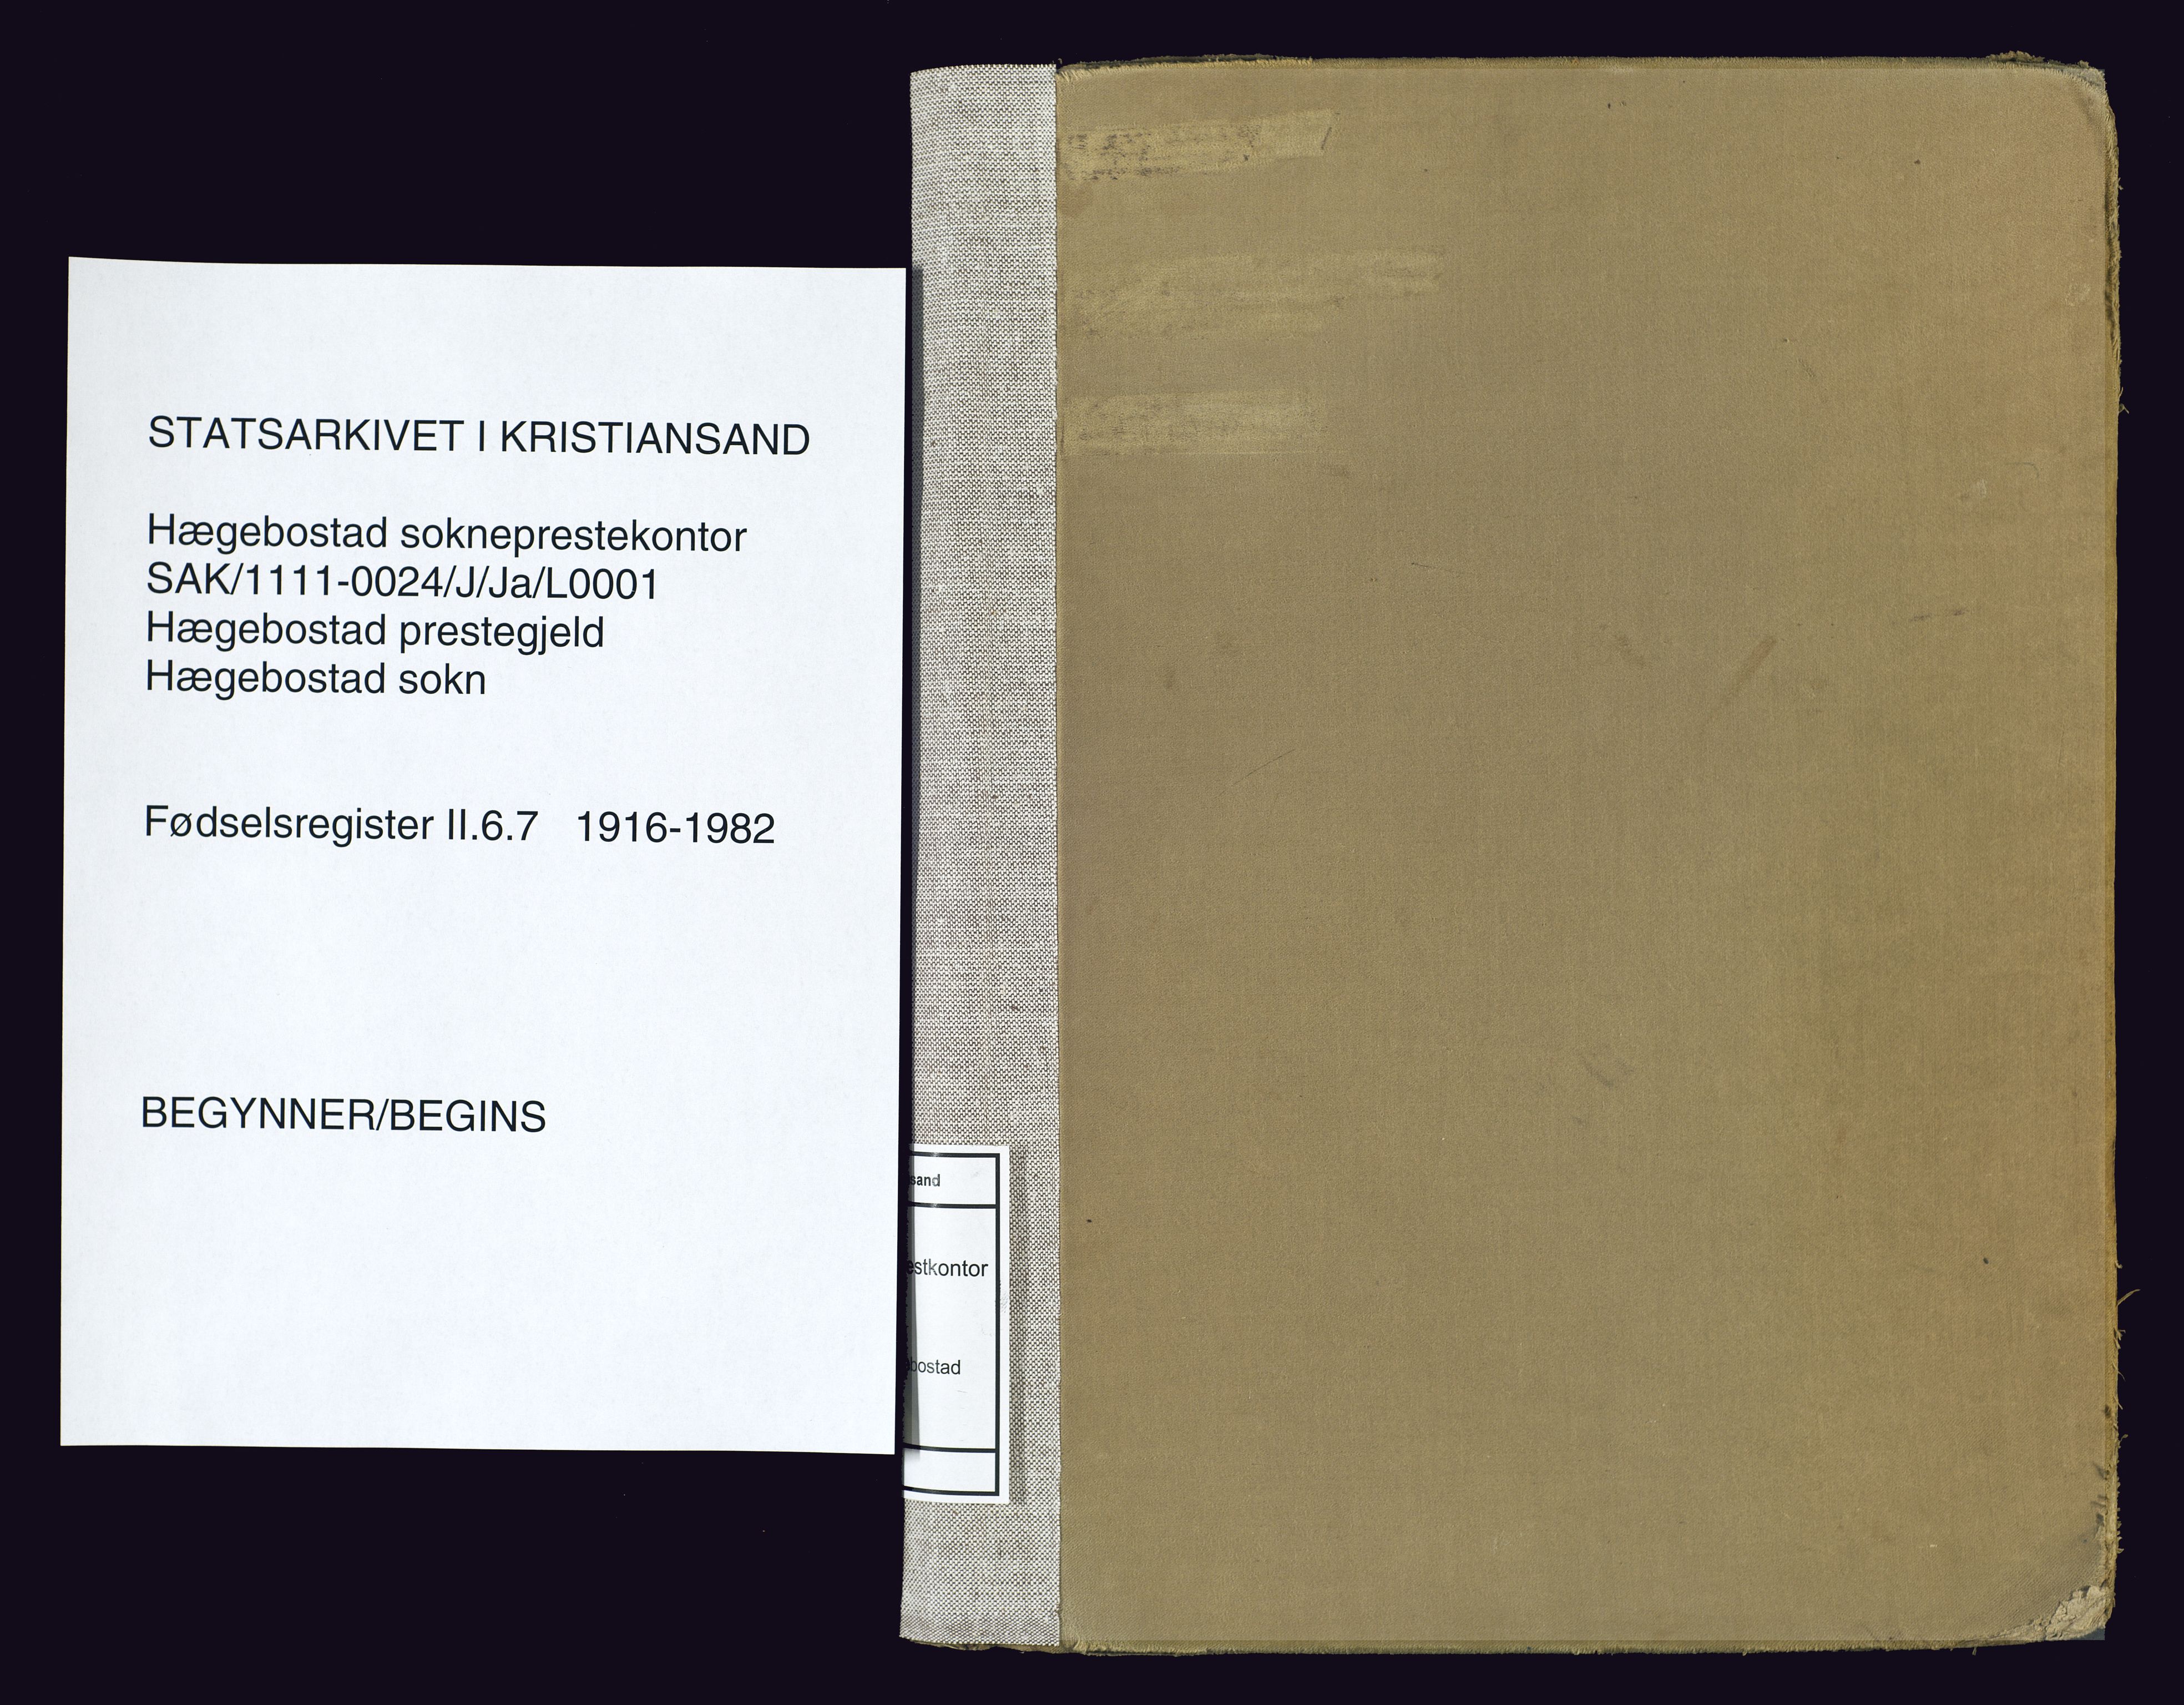 Hægebostad sokneprestkontor, SAK/1111-0024/J/Ja/L0001: Birth register no. II.6.7, 1916-1982